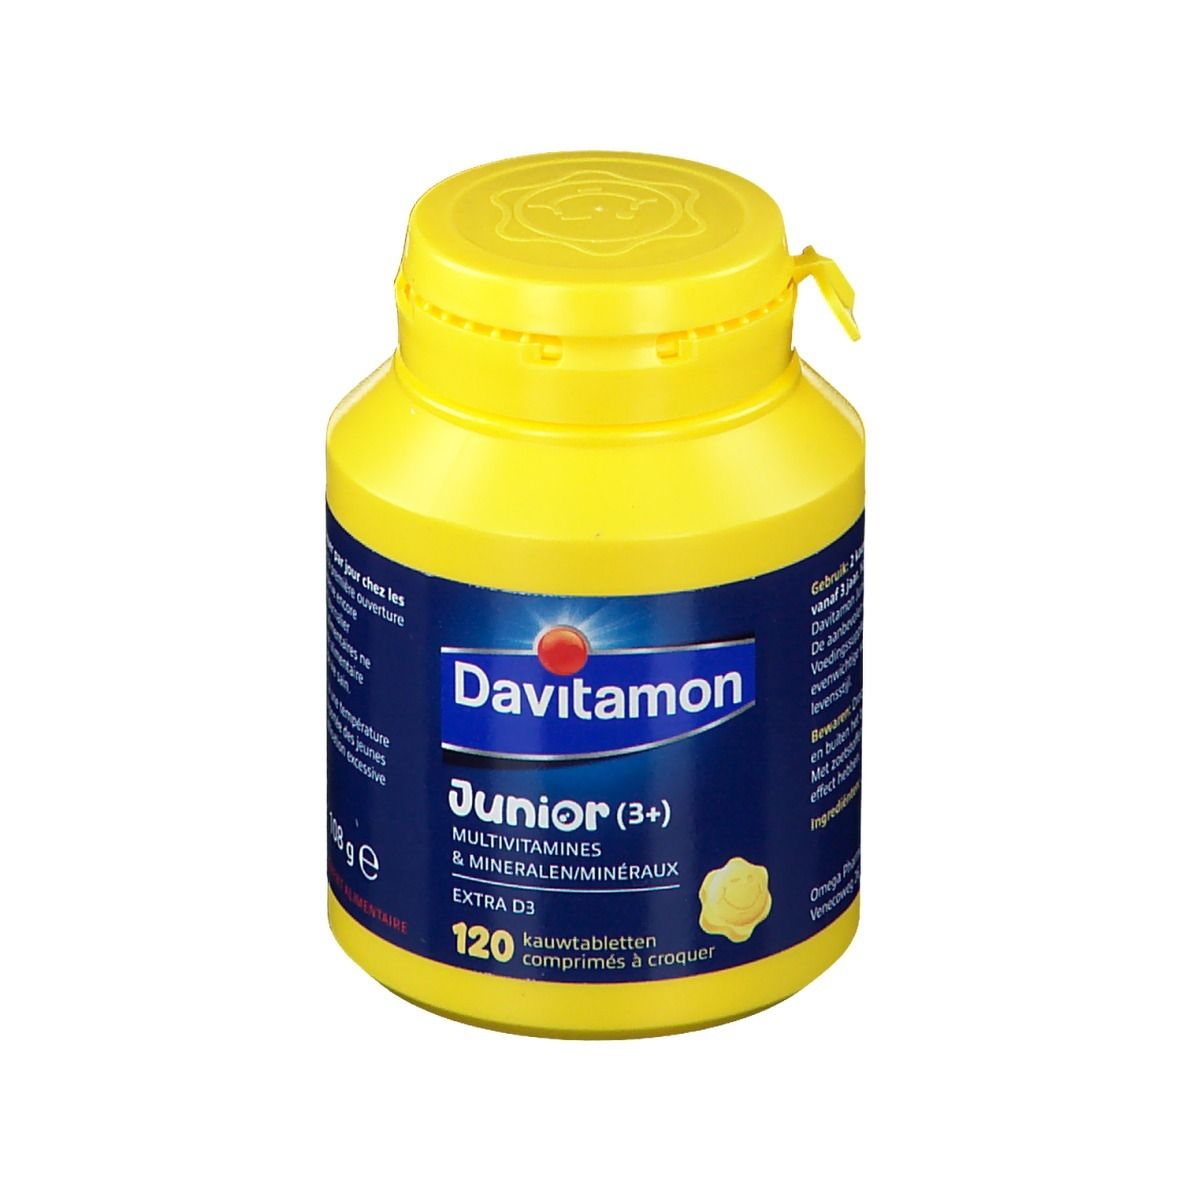 Davitamon Junior (3+) Multivitamines & Minéraux